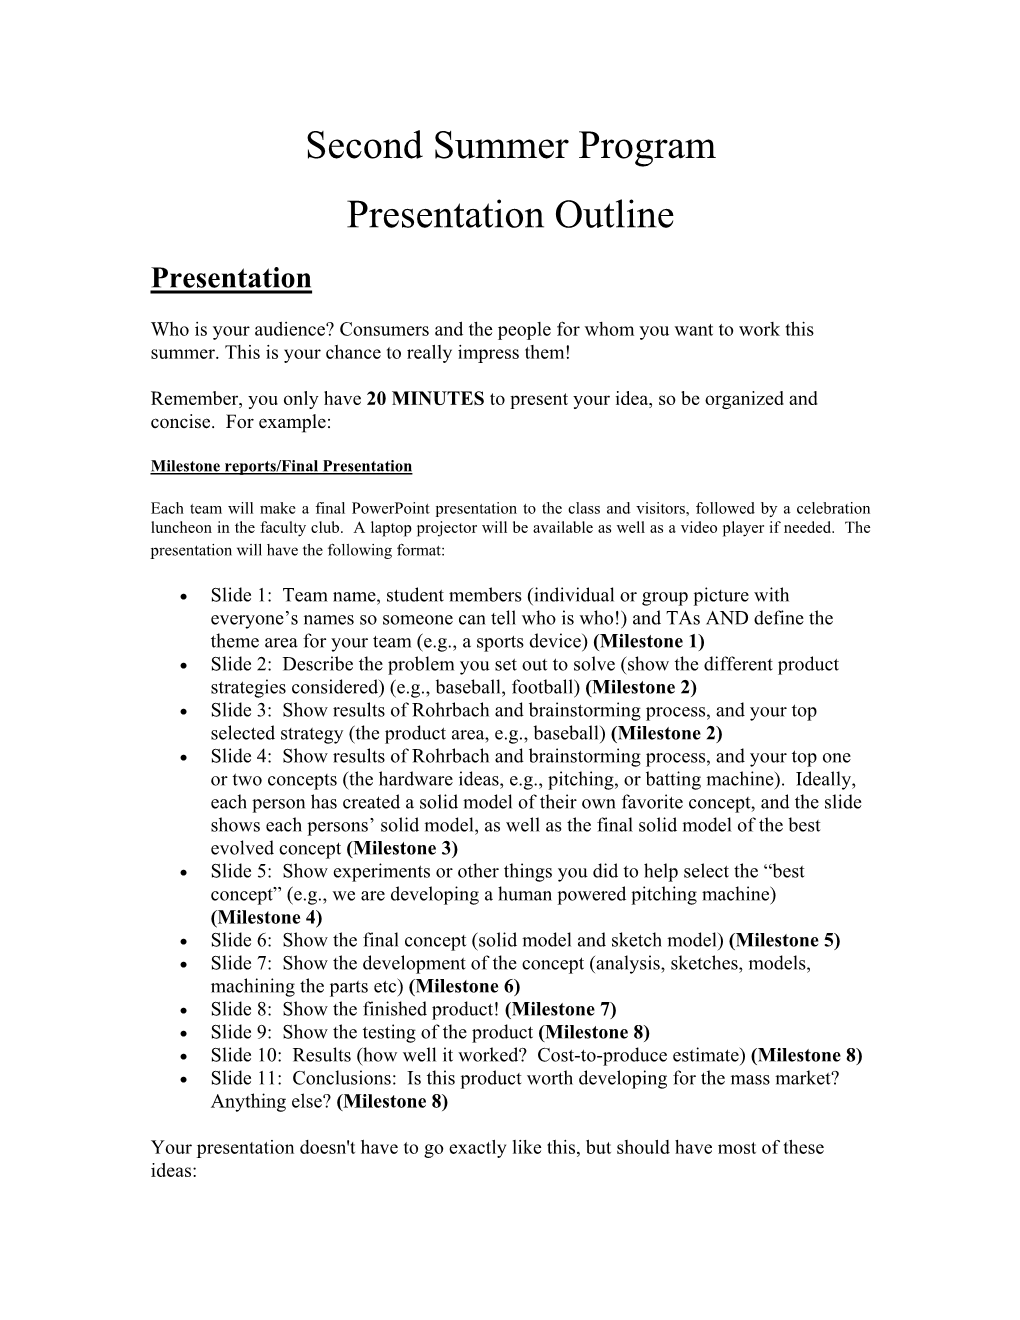 Second Summer Program Presentation Outline Presentation